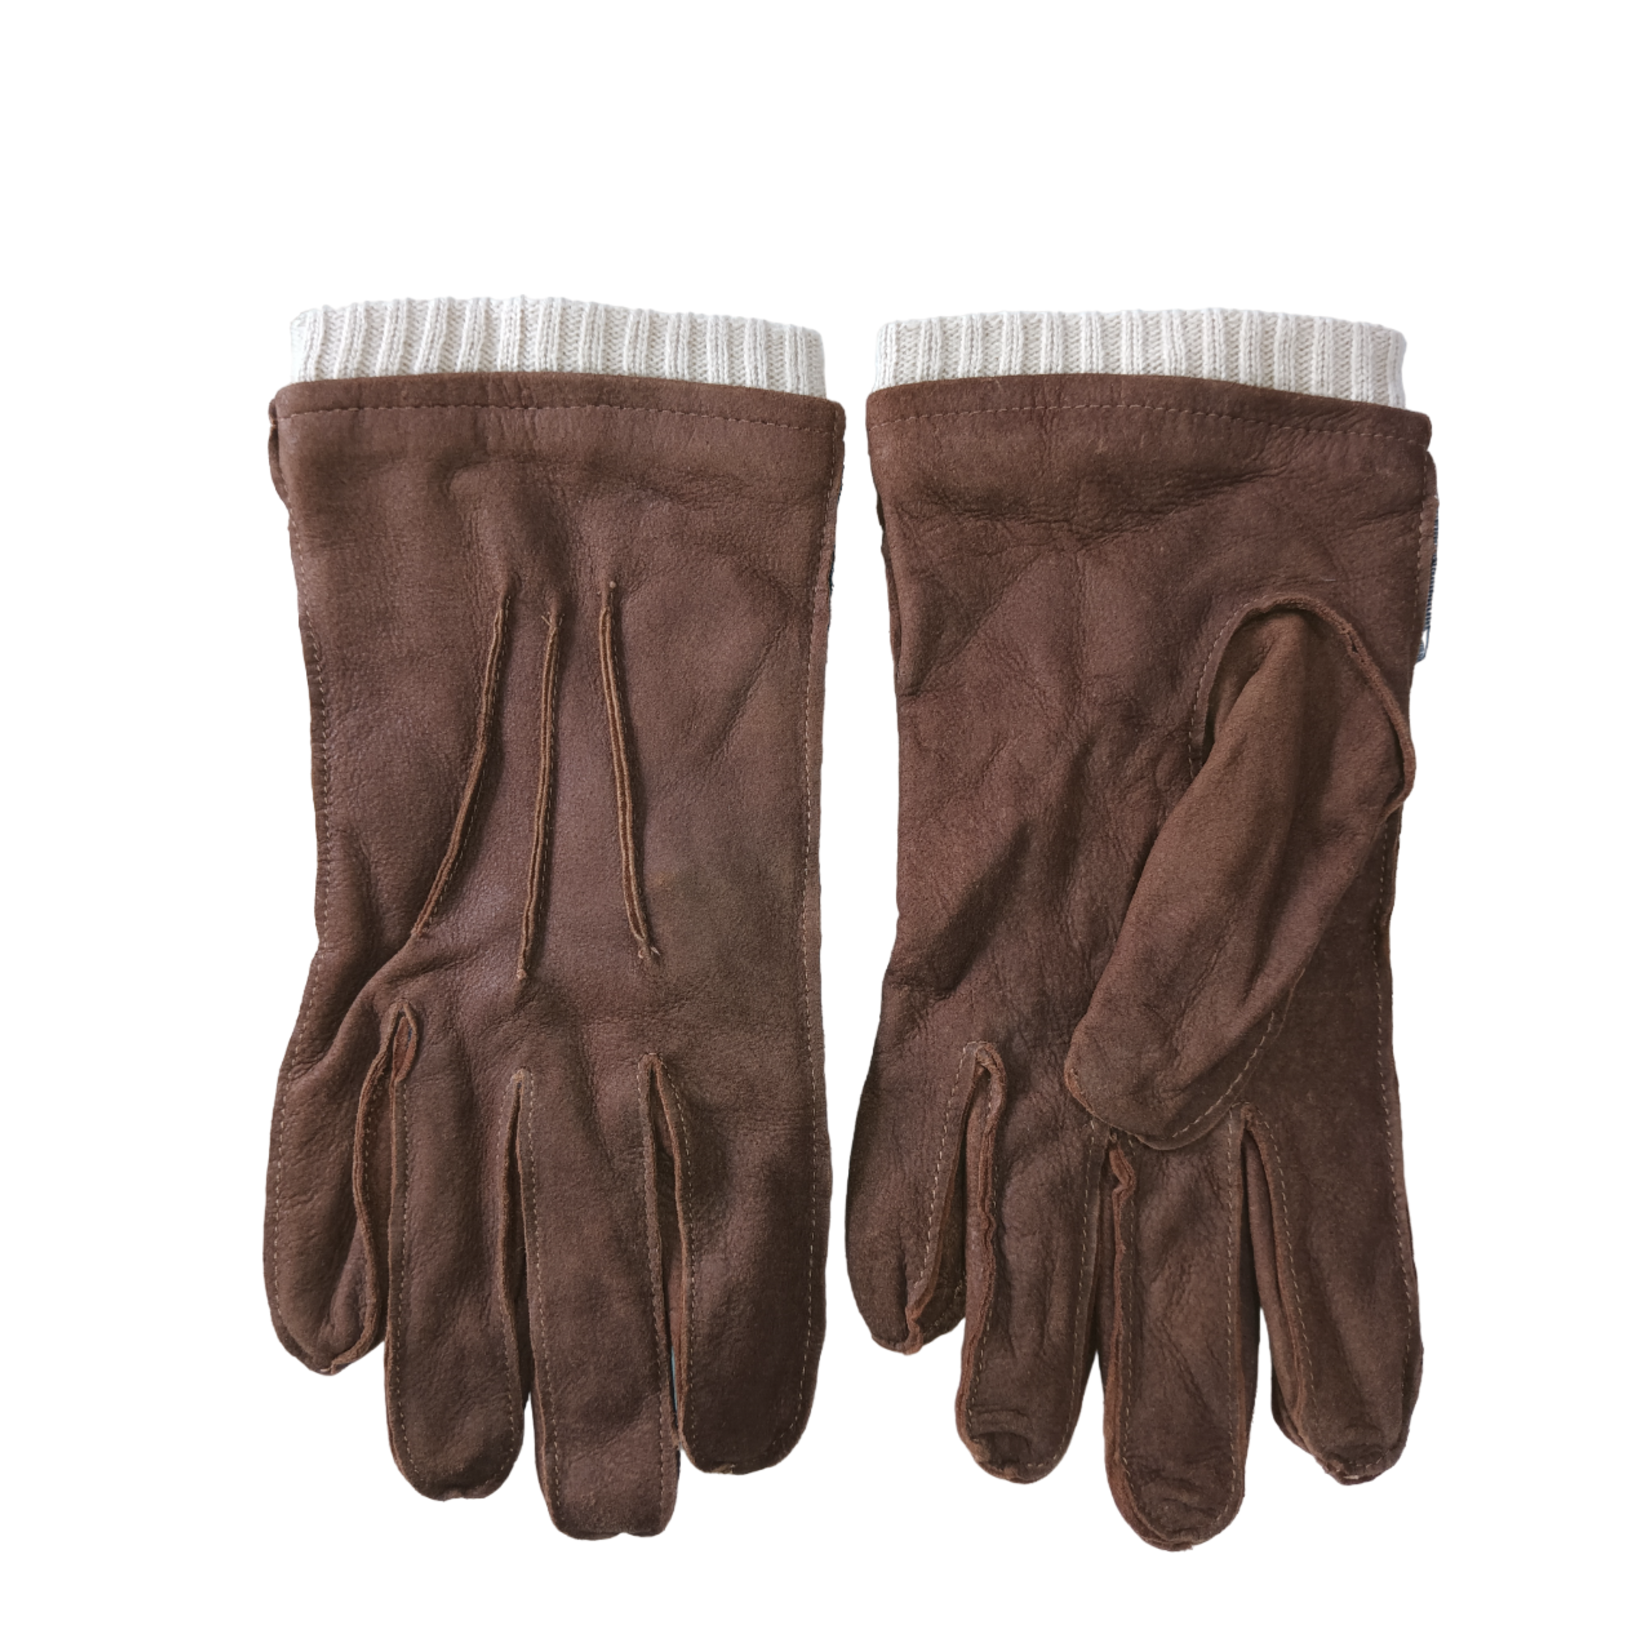 Bloomingdales Bloomingdale's Men's Brown Leather Gloves w/Cuff